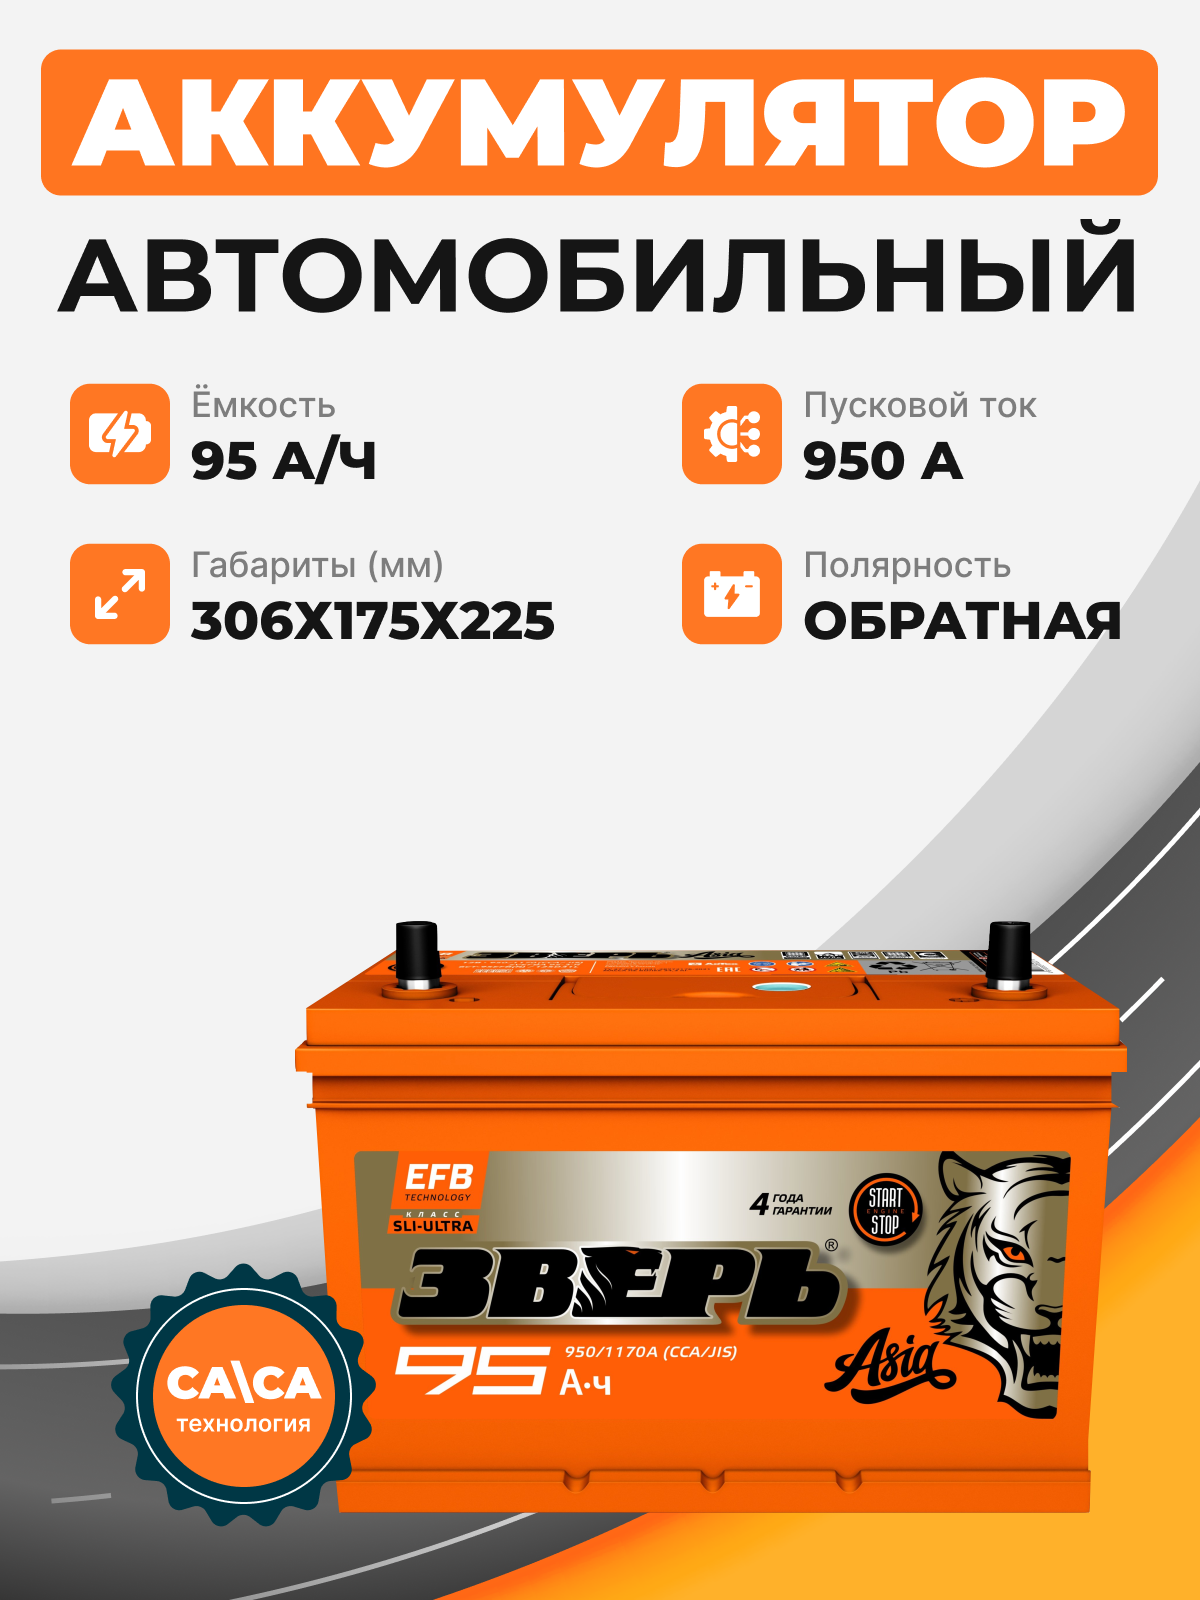 Аккумулятор Зверь Asia EFB 95 о.п. стартовый ток 950 EN ZVEFBA 95-3-R